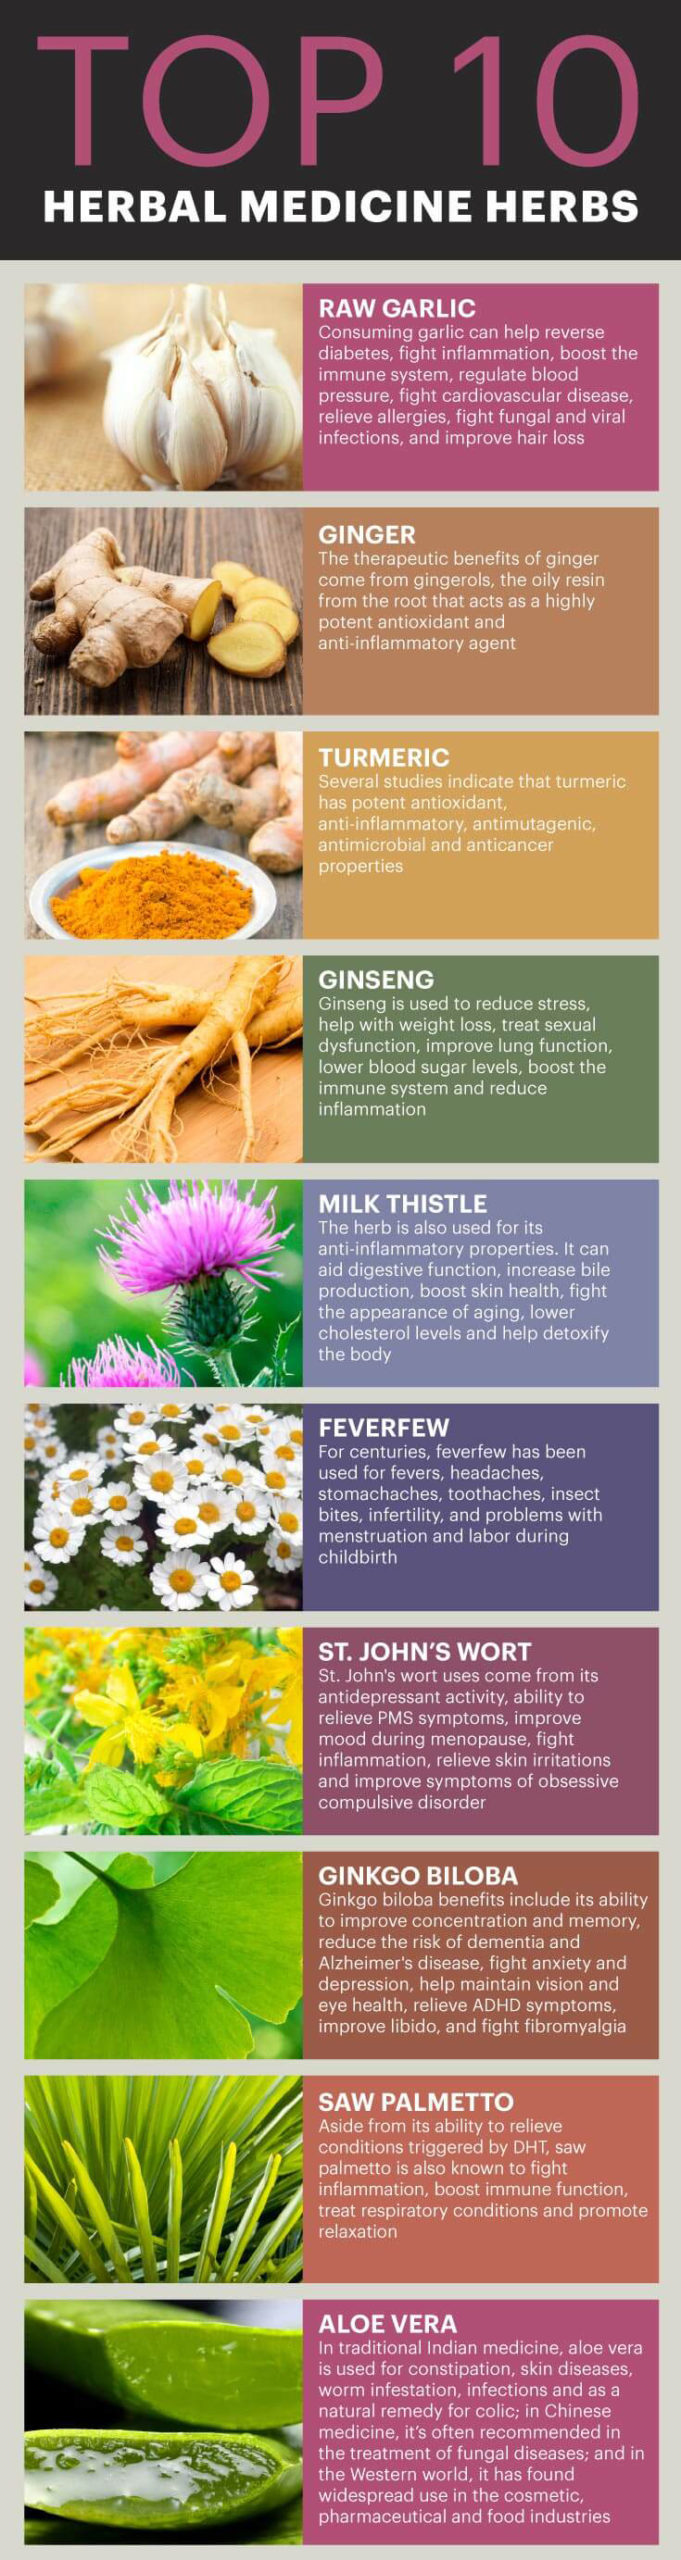 Top 10 Medicinal Herbs